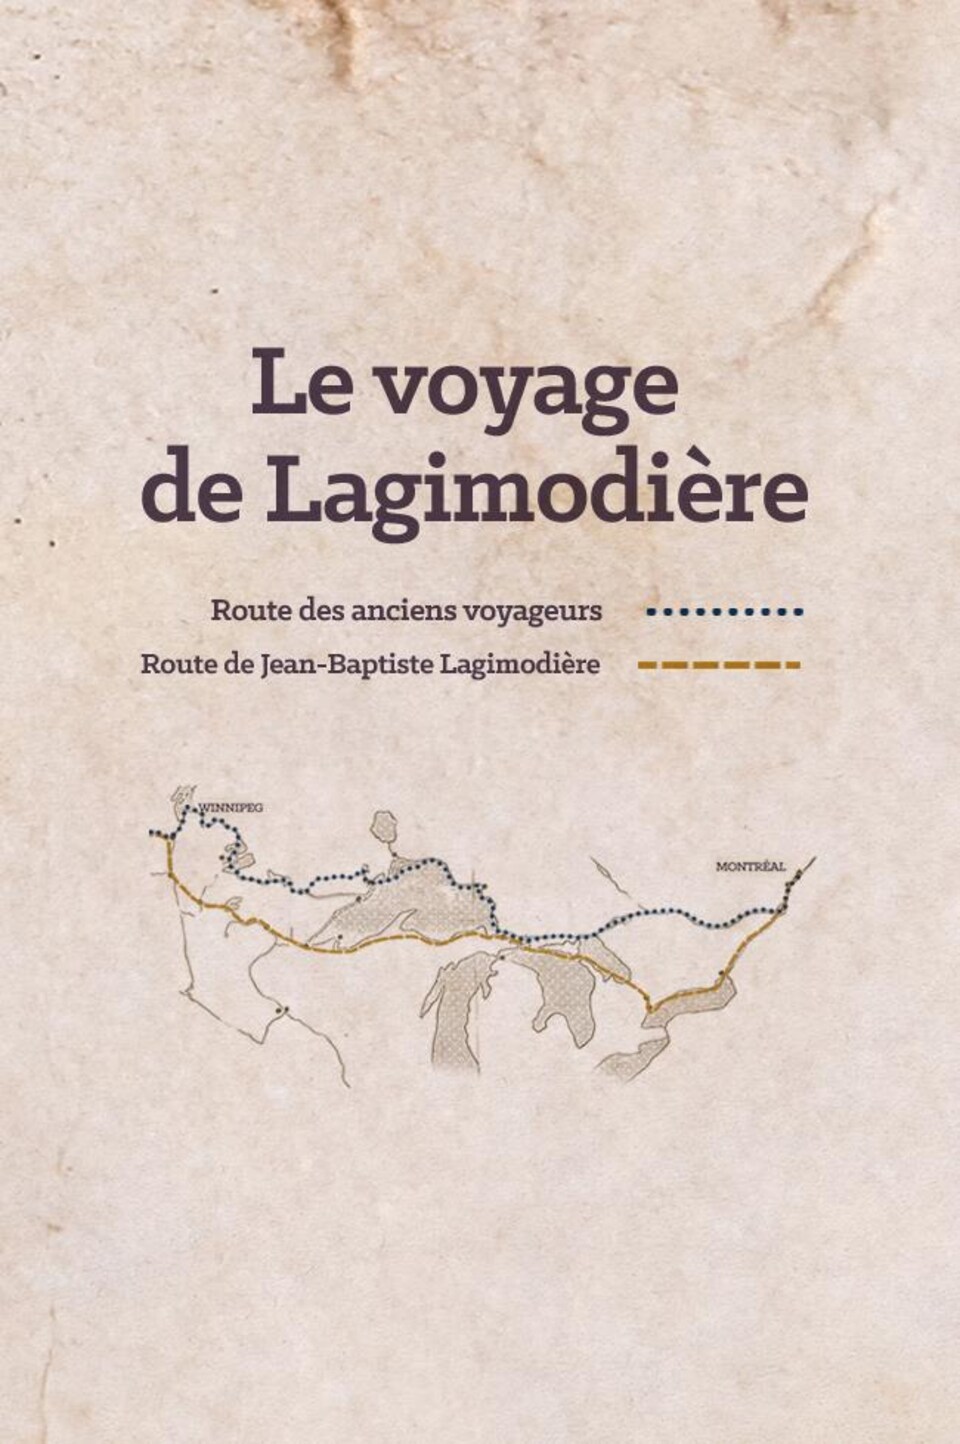 Le voyage de Lagimodière